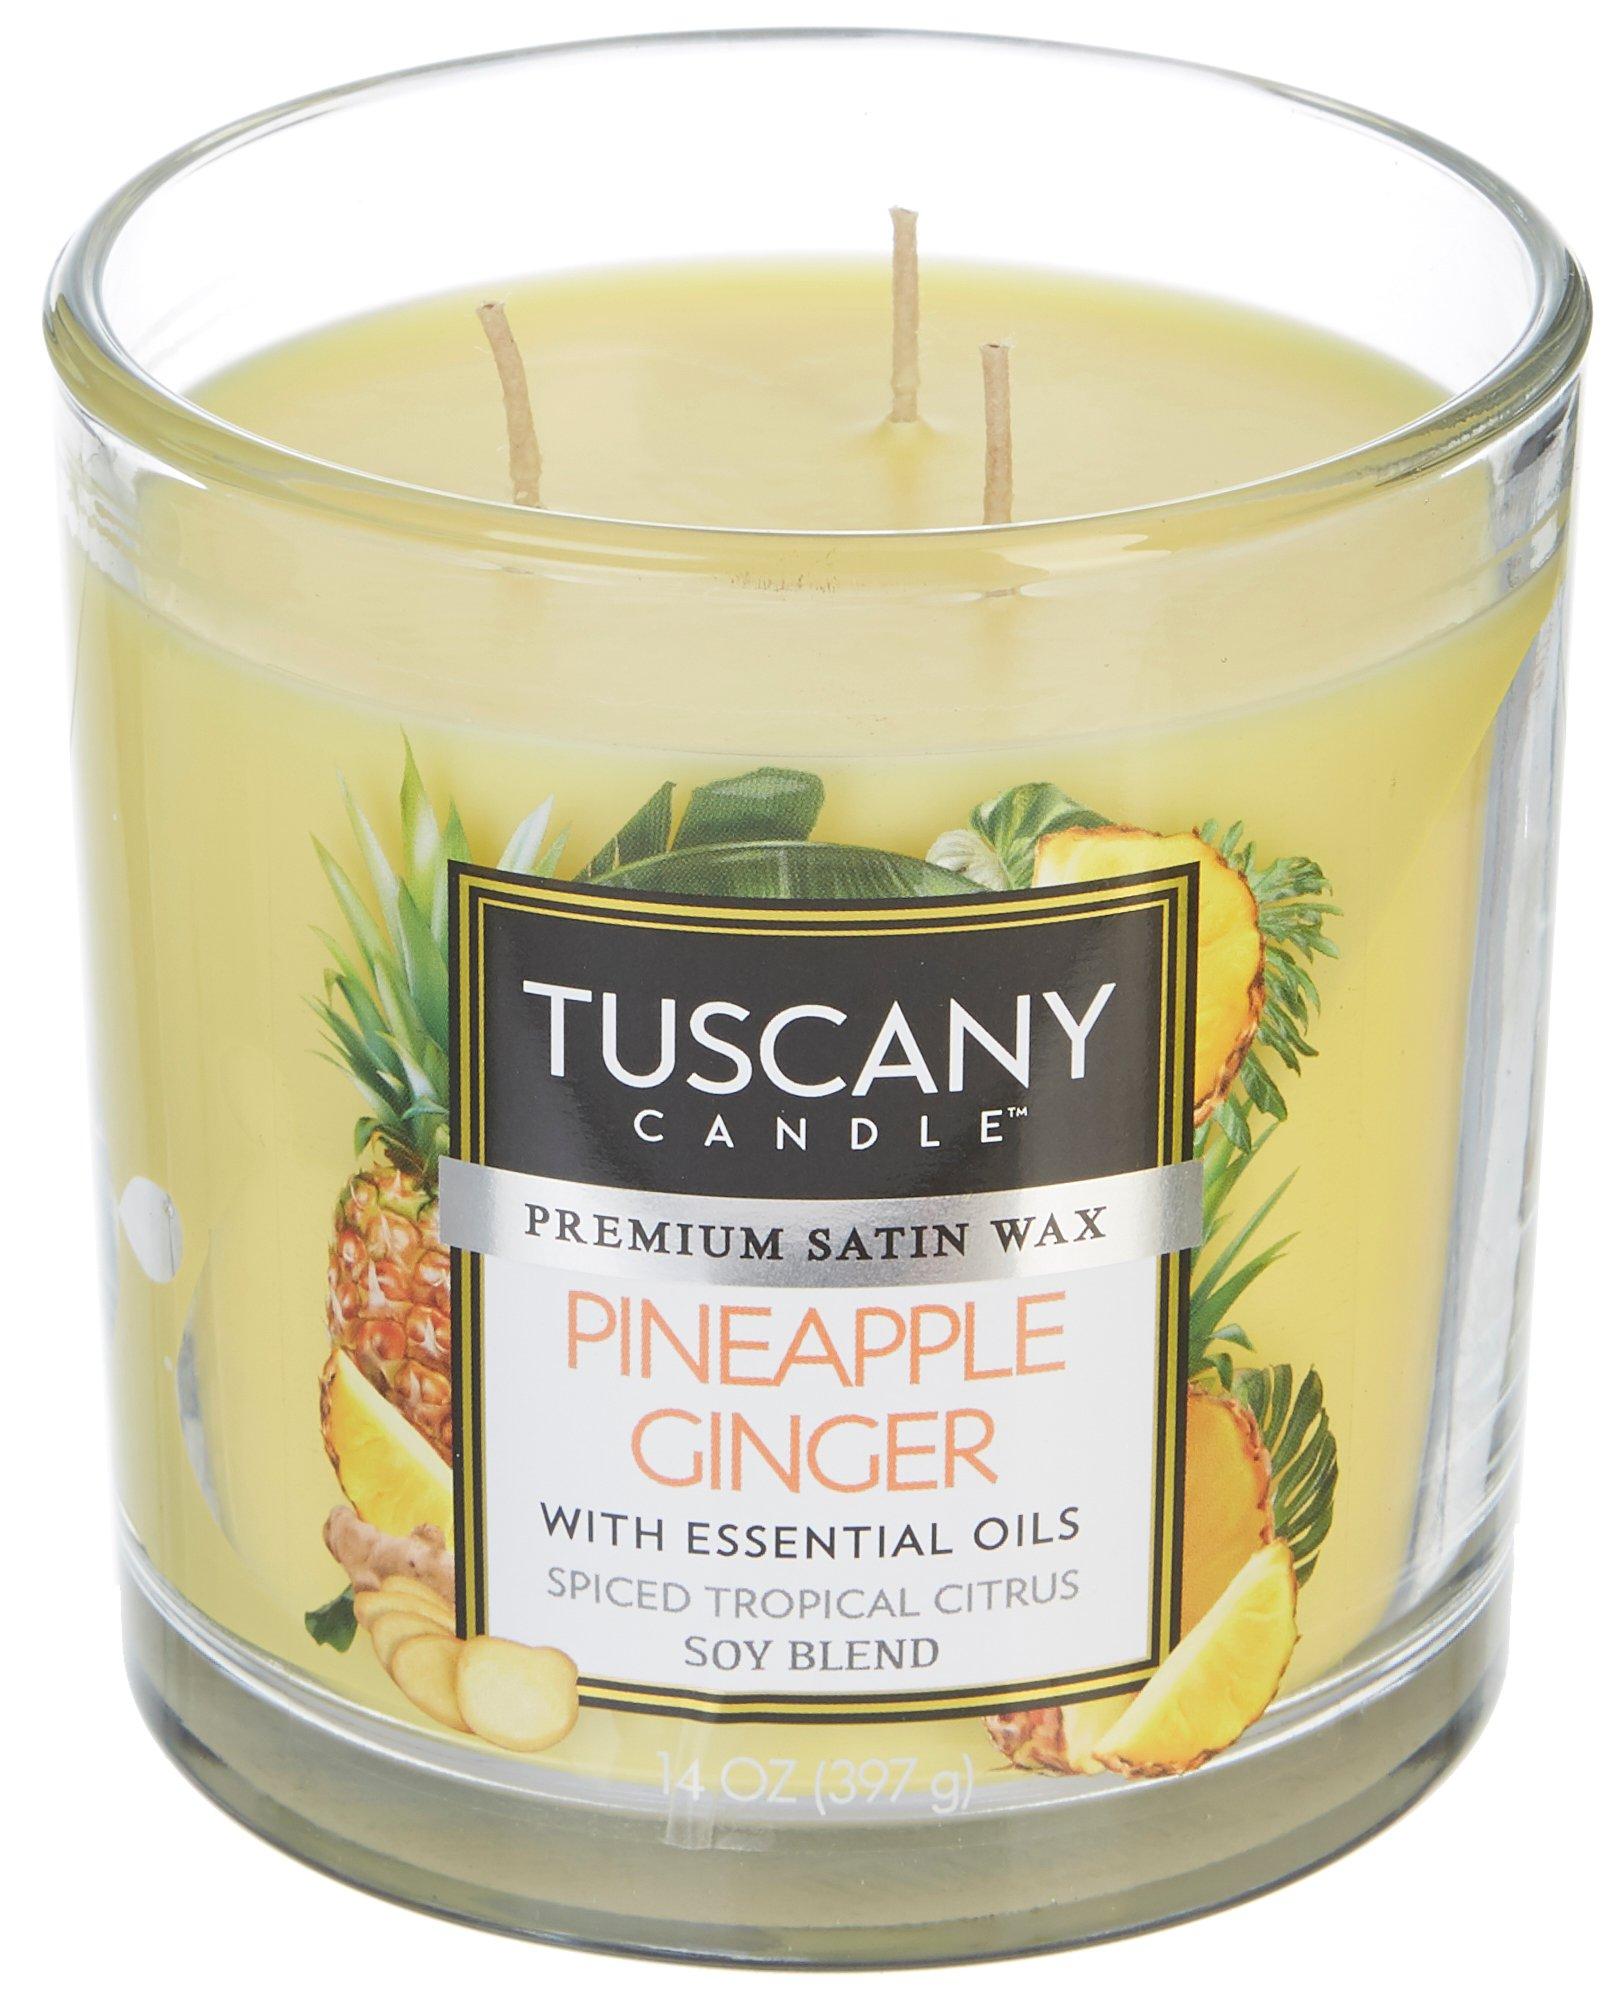 14 oz. Pineapple Ginger Soy Blend Jar Candle